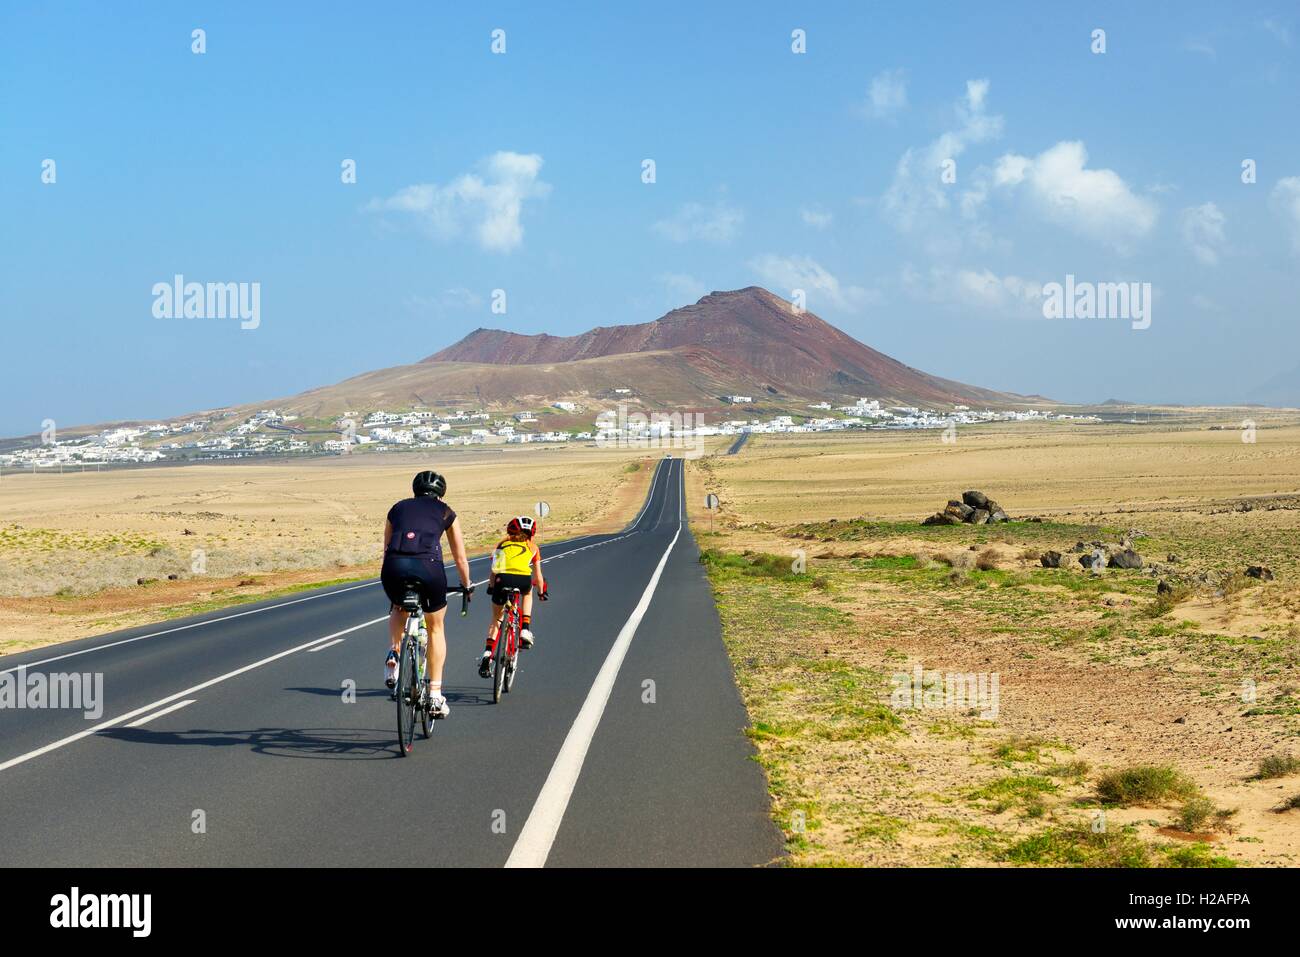 Radfahren auf der LZ-401 Straße in Richtung Vulkankegel ragen Dorf Soo. Teguise, Lanzarote, Kanarische Inseln, Spanien Stockfoto